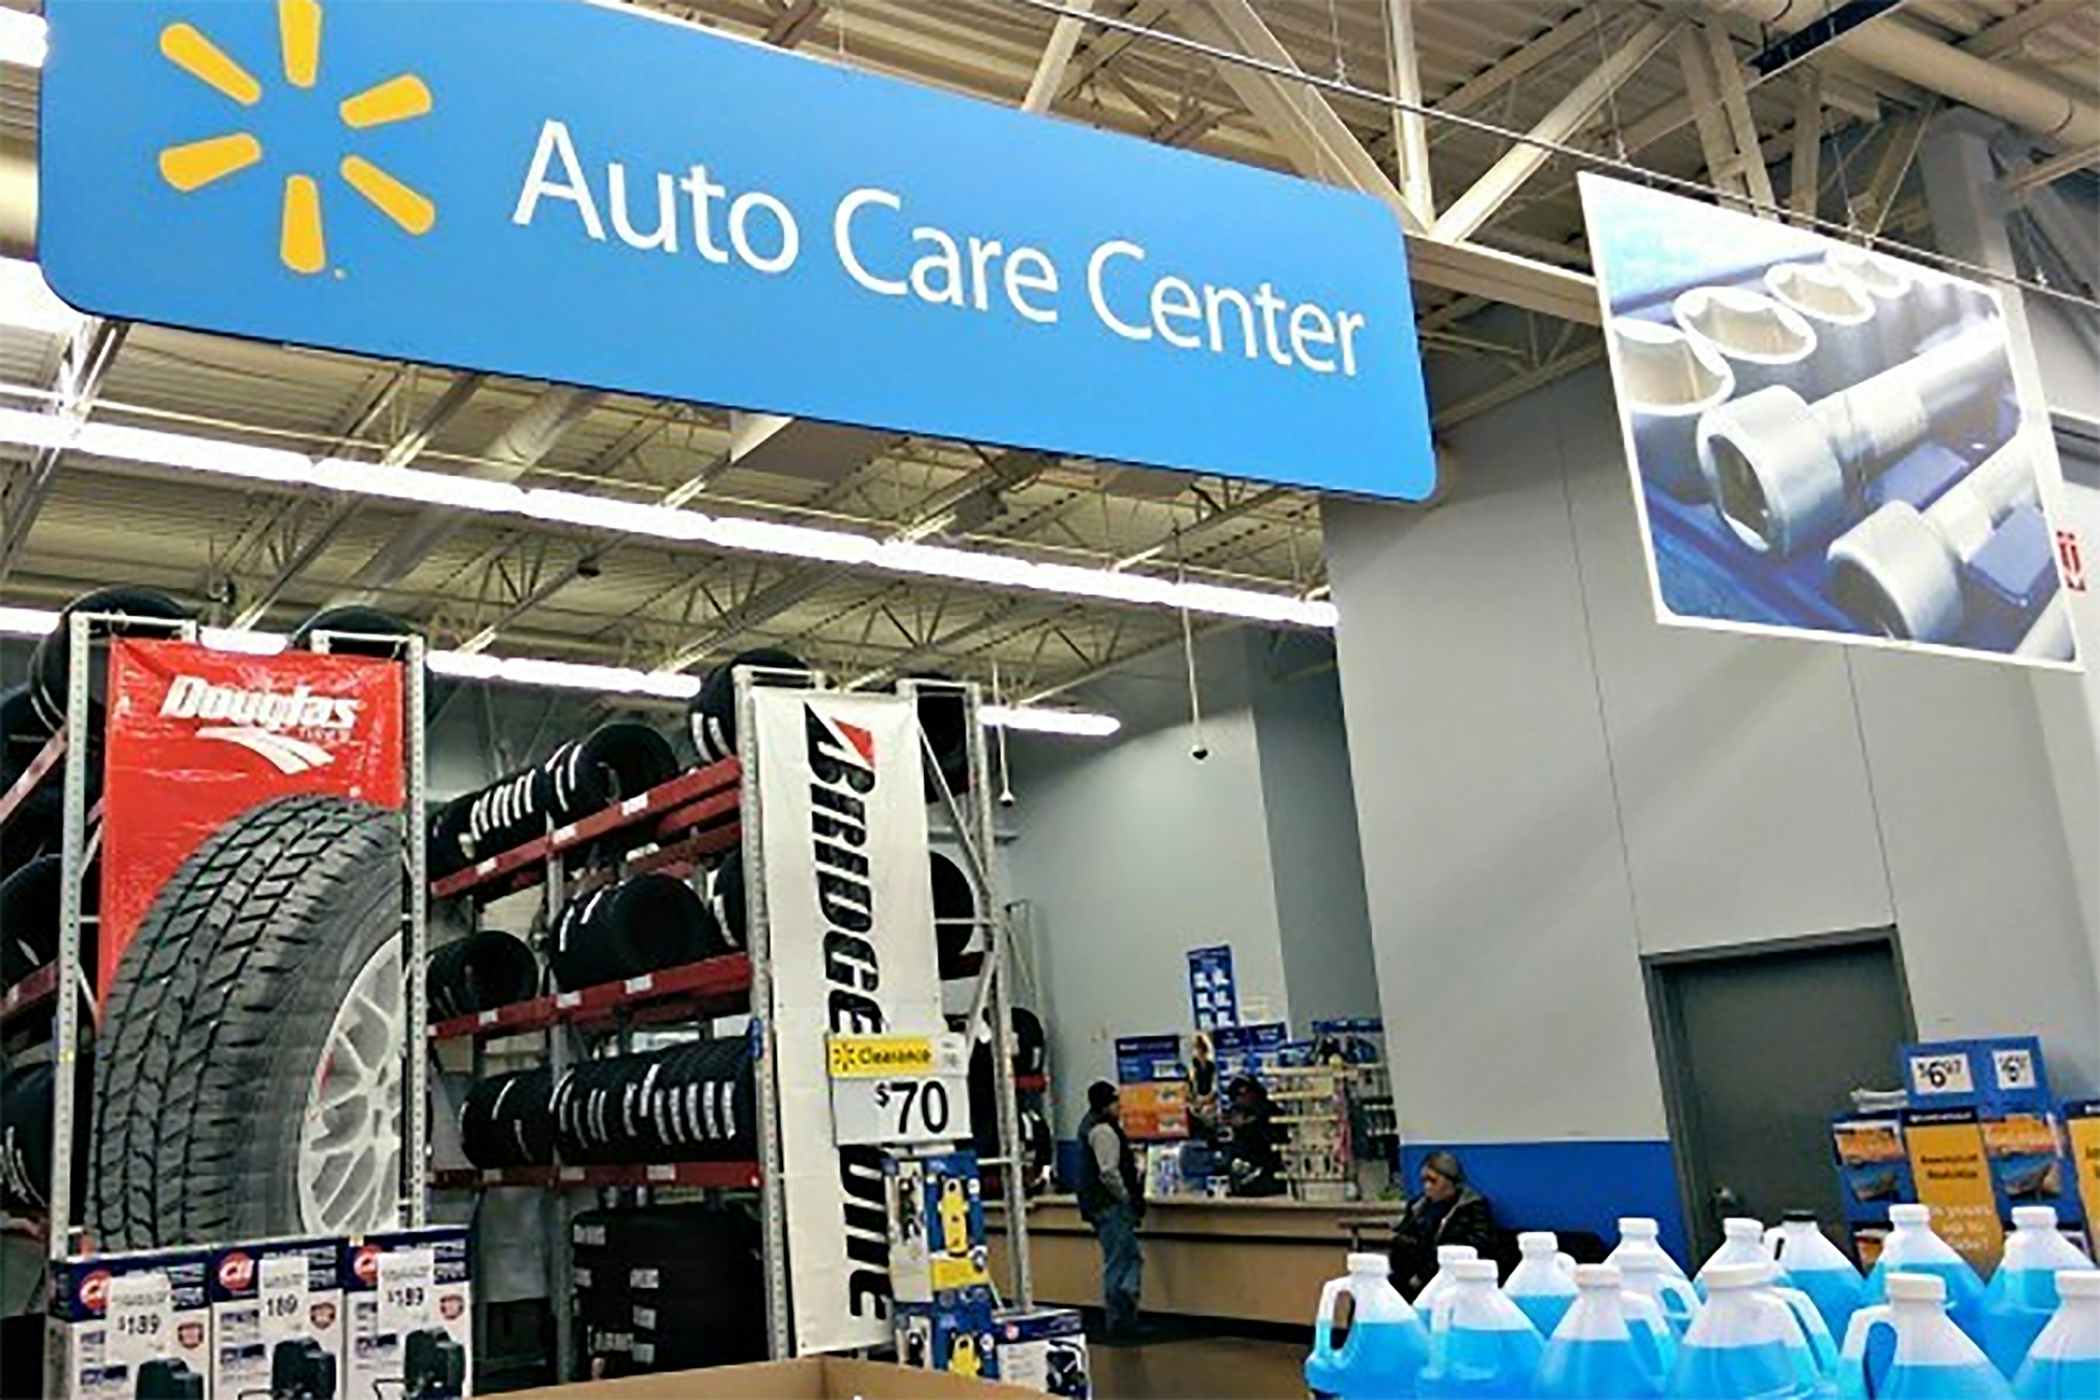 Walmart Auto Care center